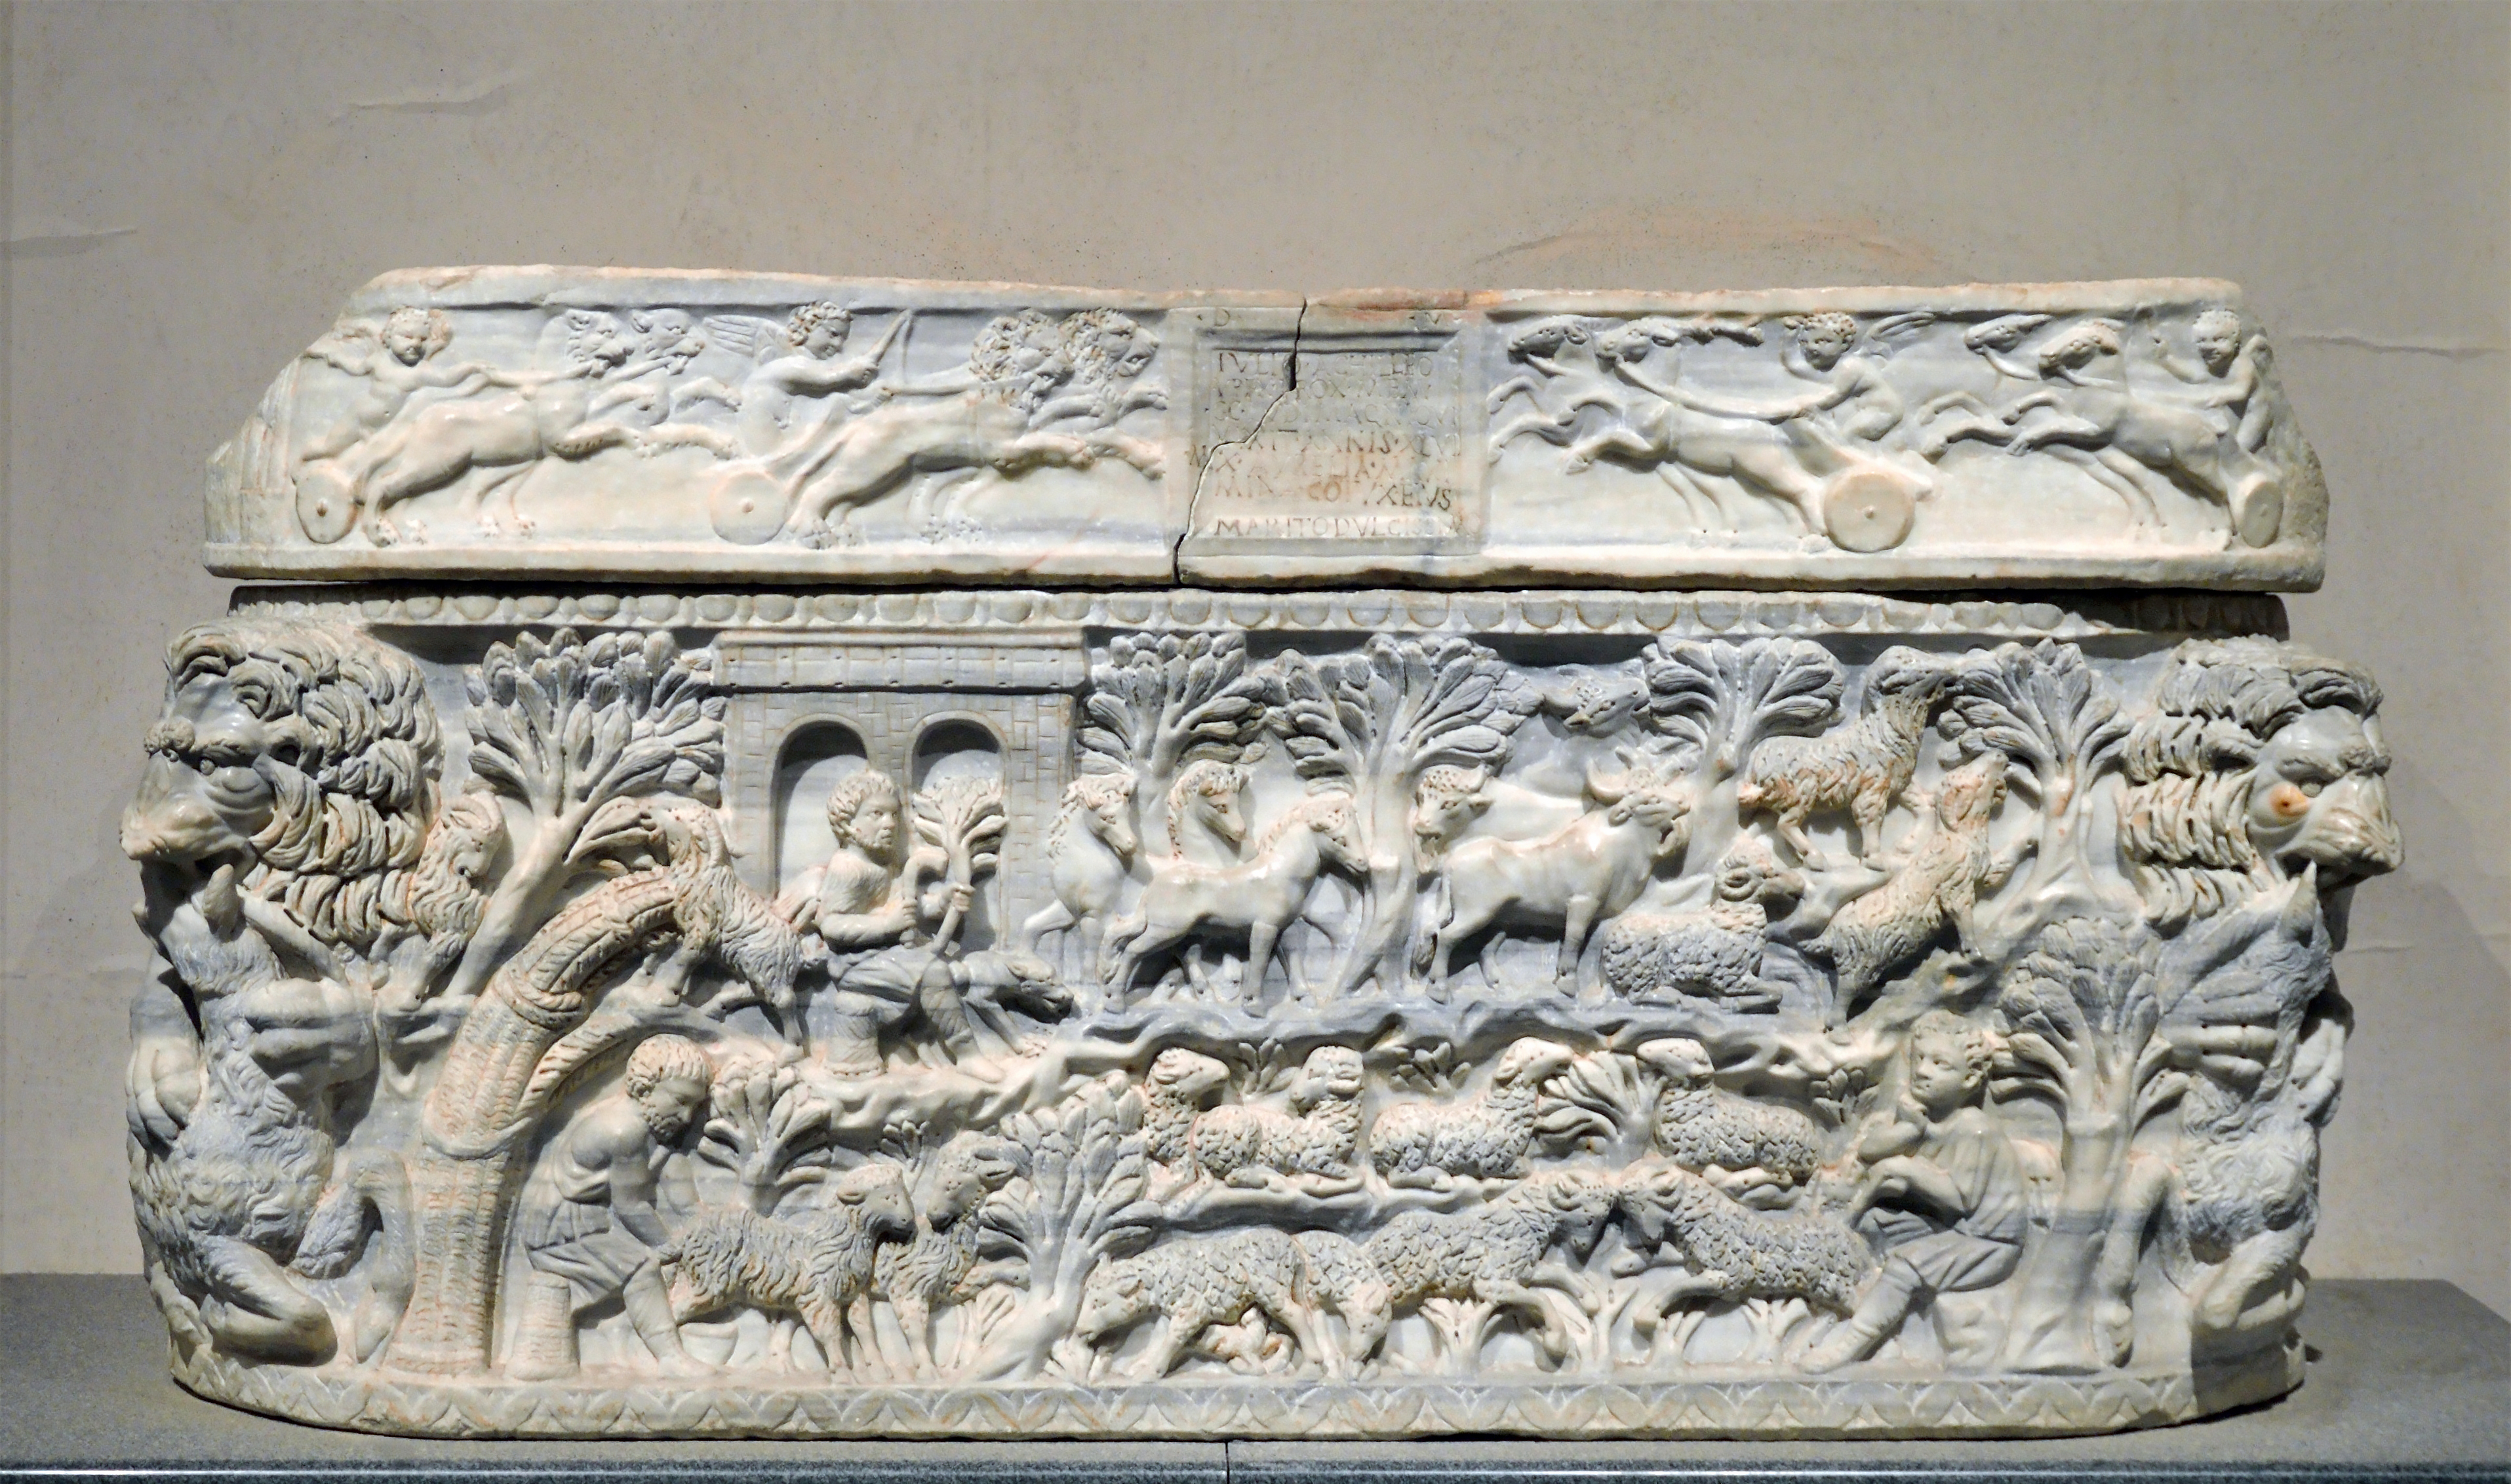 Ancient Roman sarcophagi in the Museo delle Terme di Diocleziano